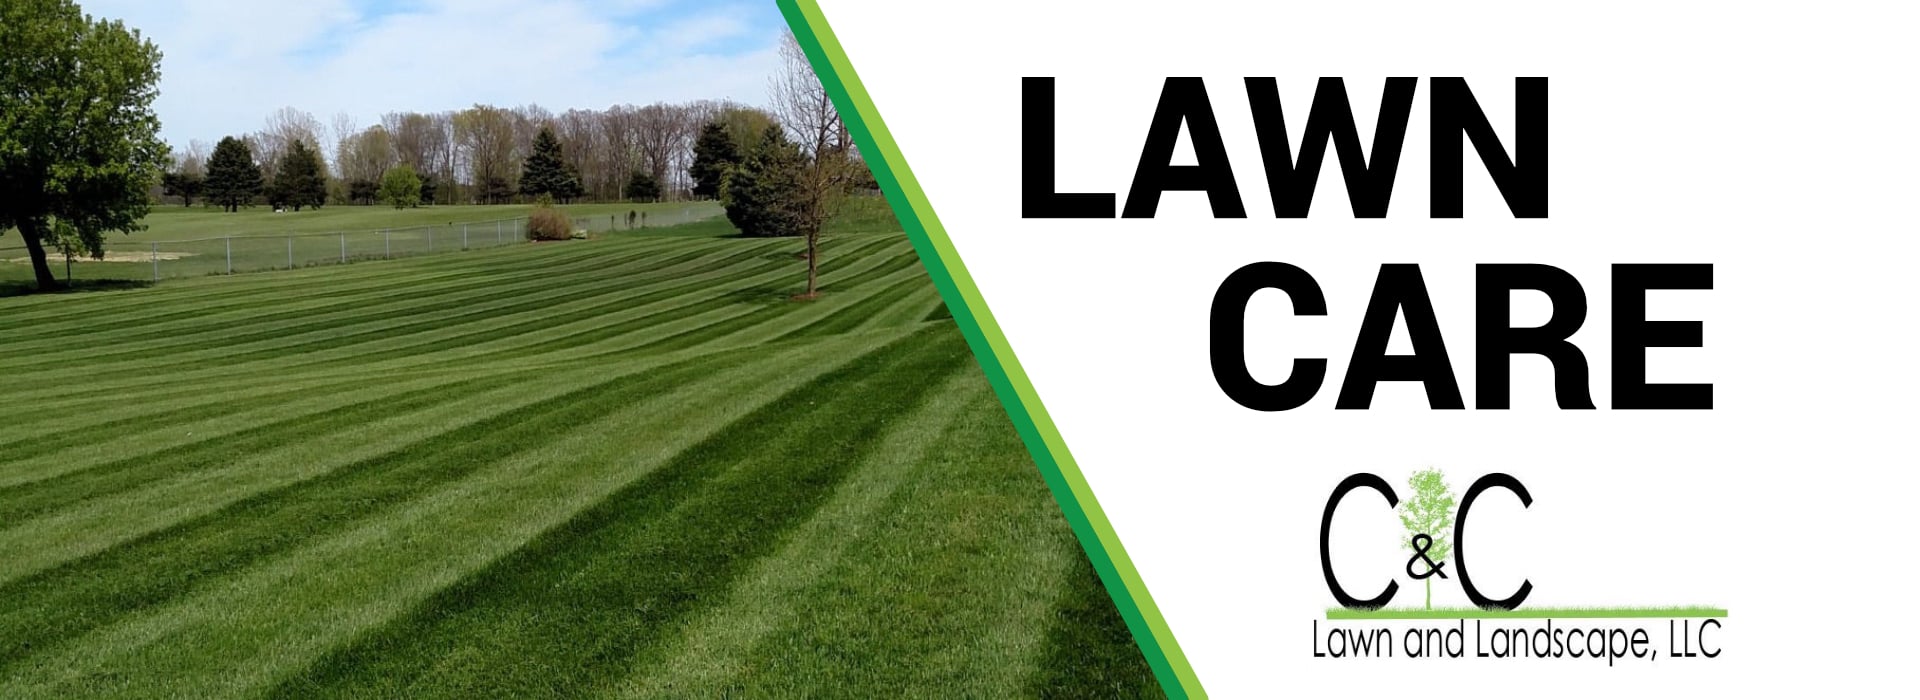 C&C Lawn Care